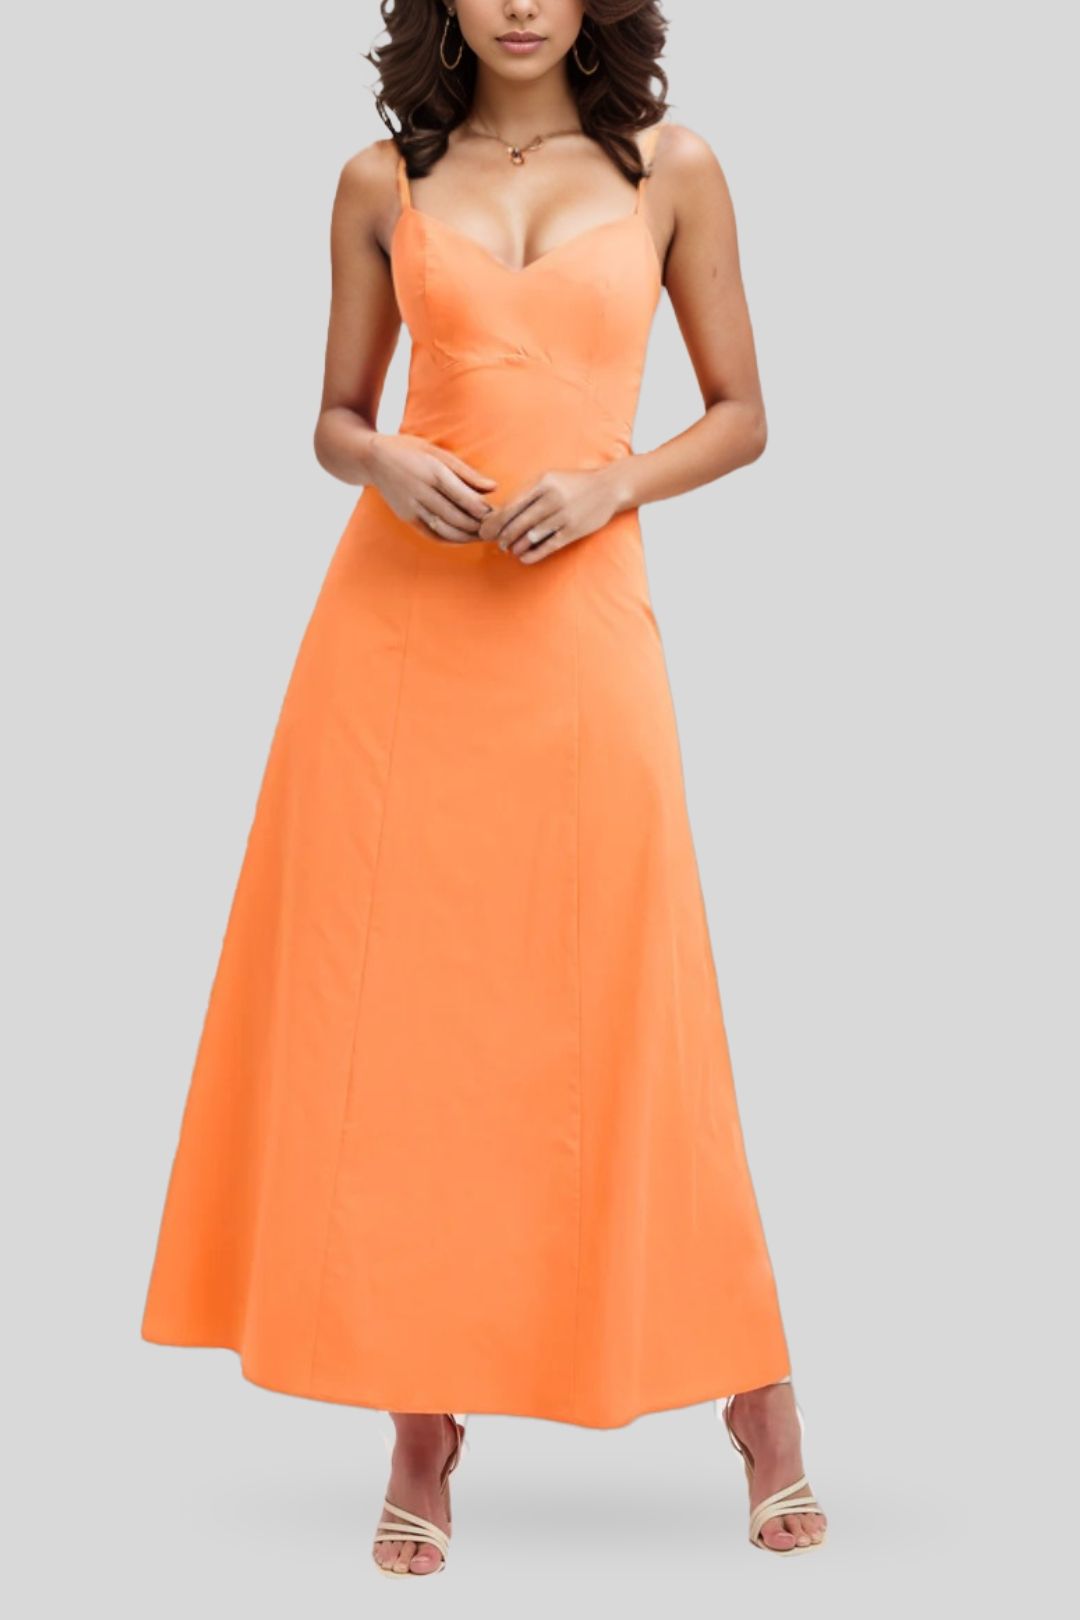 Kookai - Maguy Maxi Dress - Tangerine